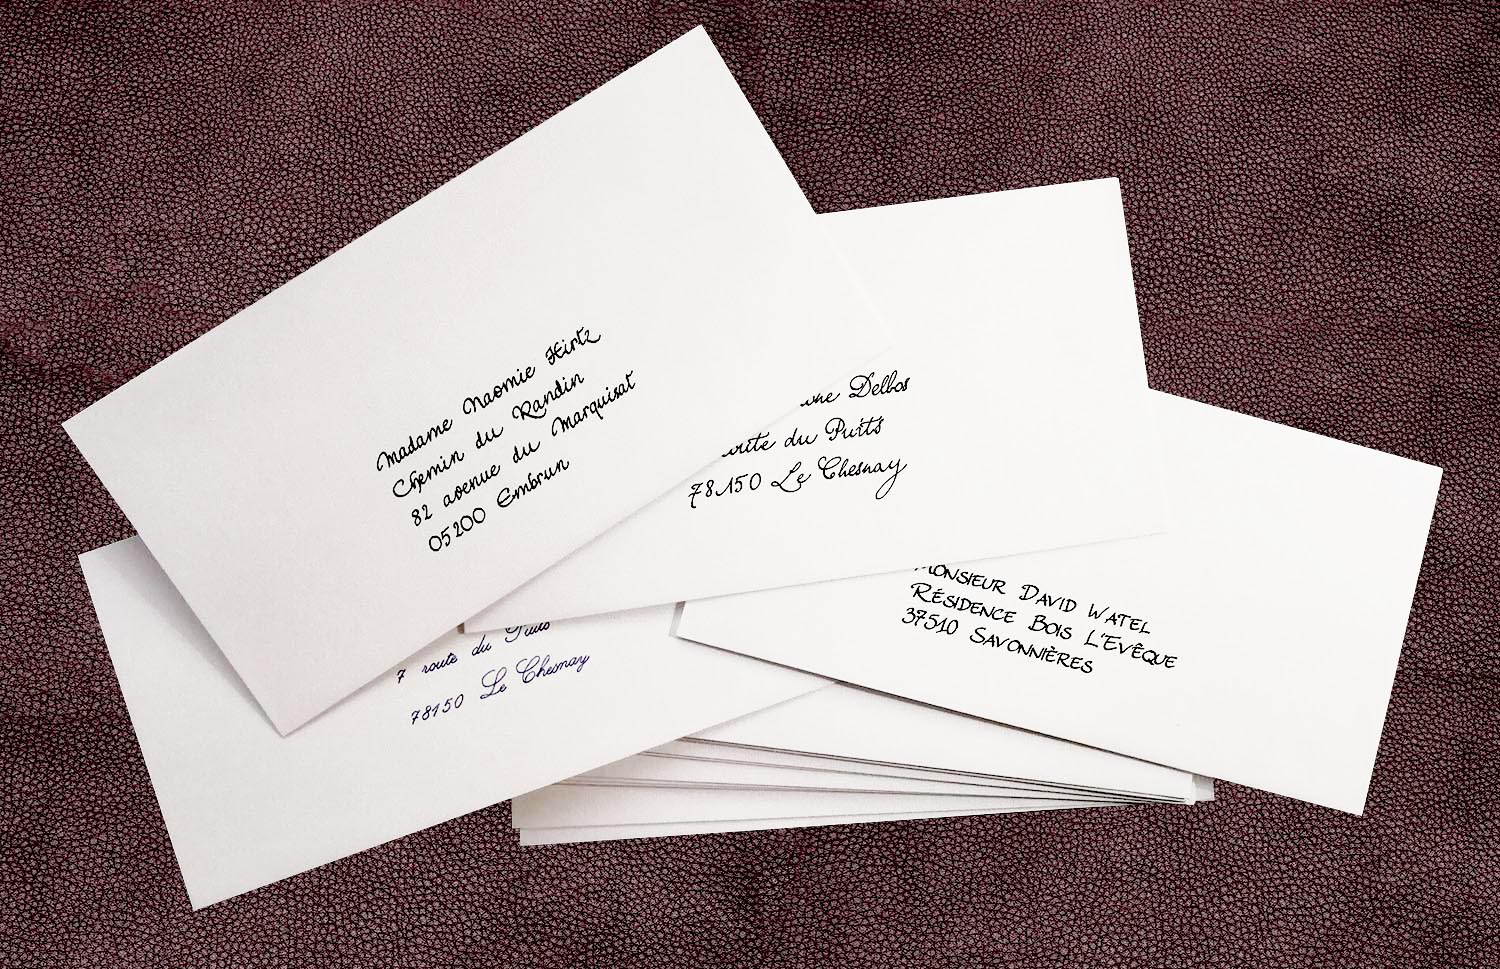 Les enveloppes avec adresses manuscrites ajoutent une touche de personnalisation et un charme incontestable